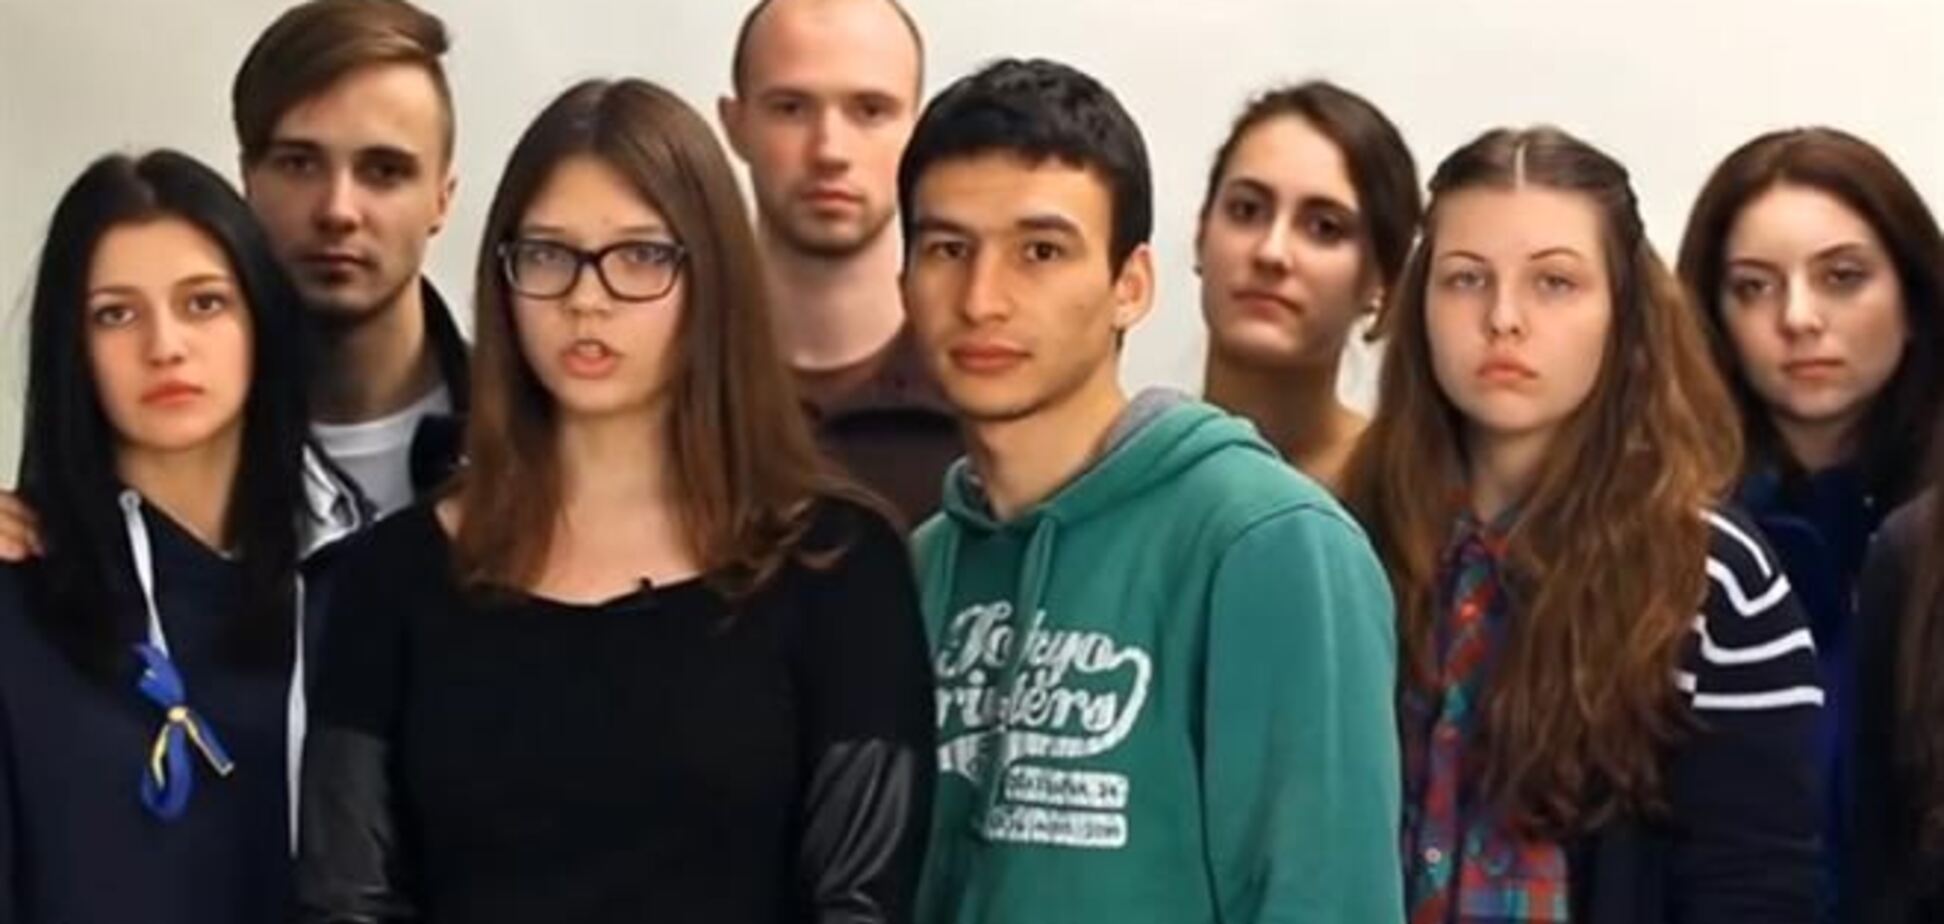 В сети появилось видеообращение студентов-крымчан, учащихся в Киеве, к жителям Крыма